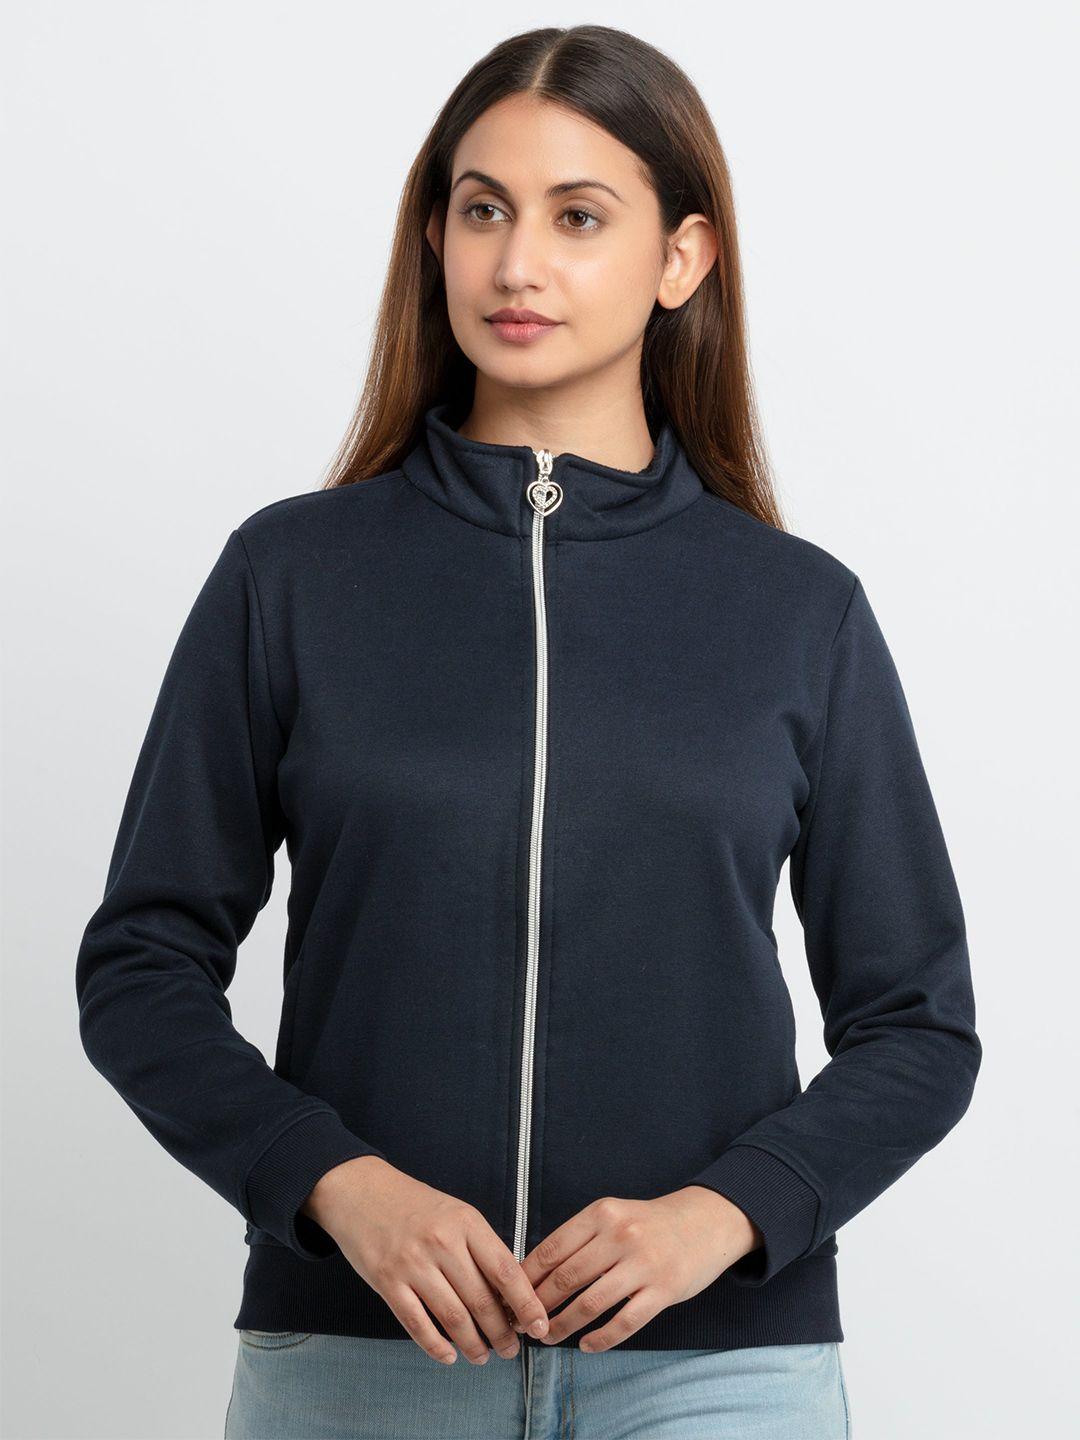 status quo women navy blue solid sweatshirt